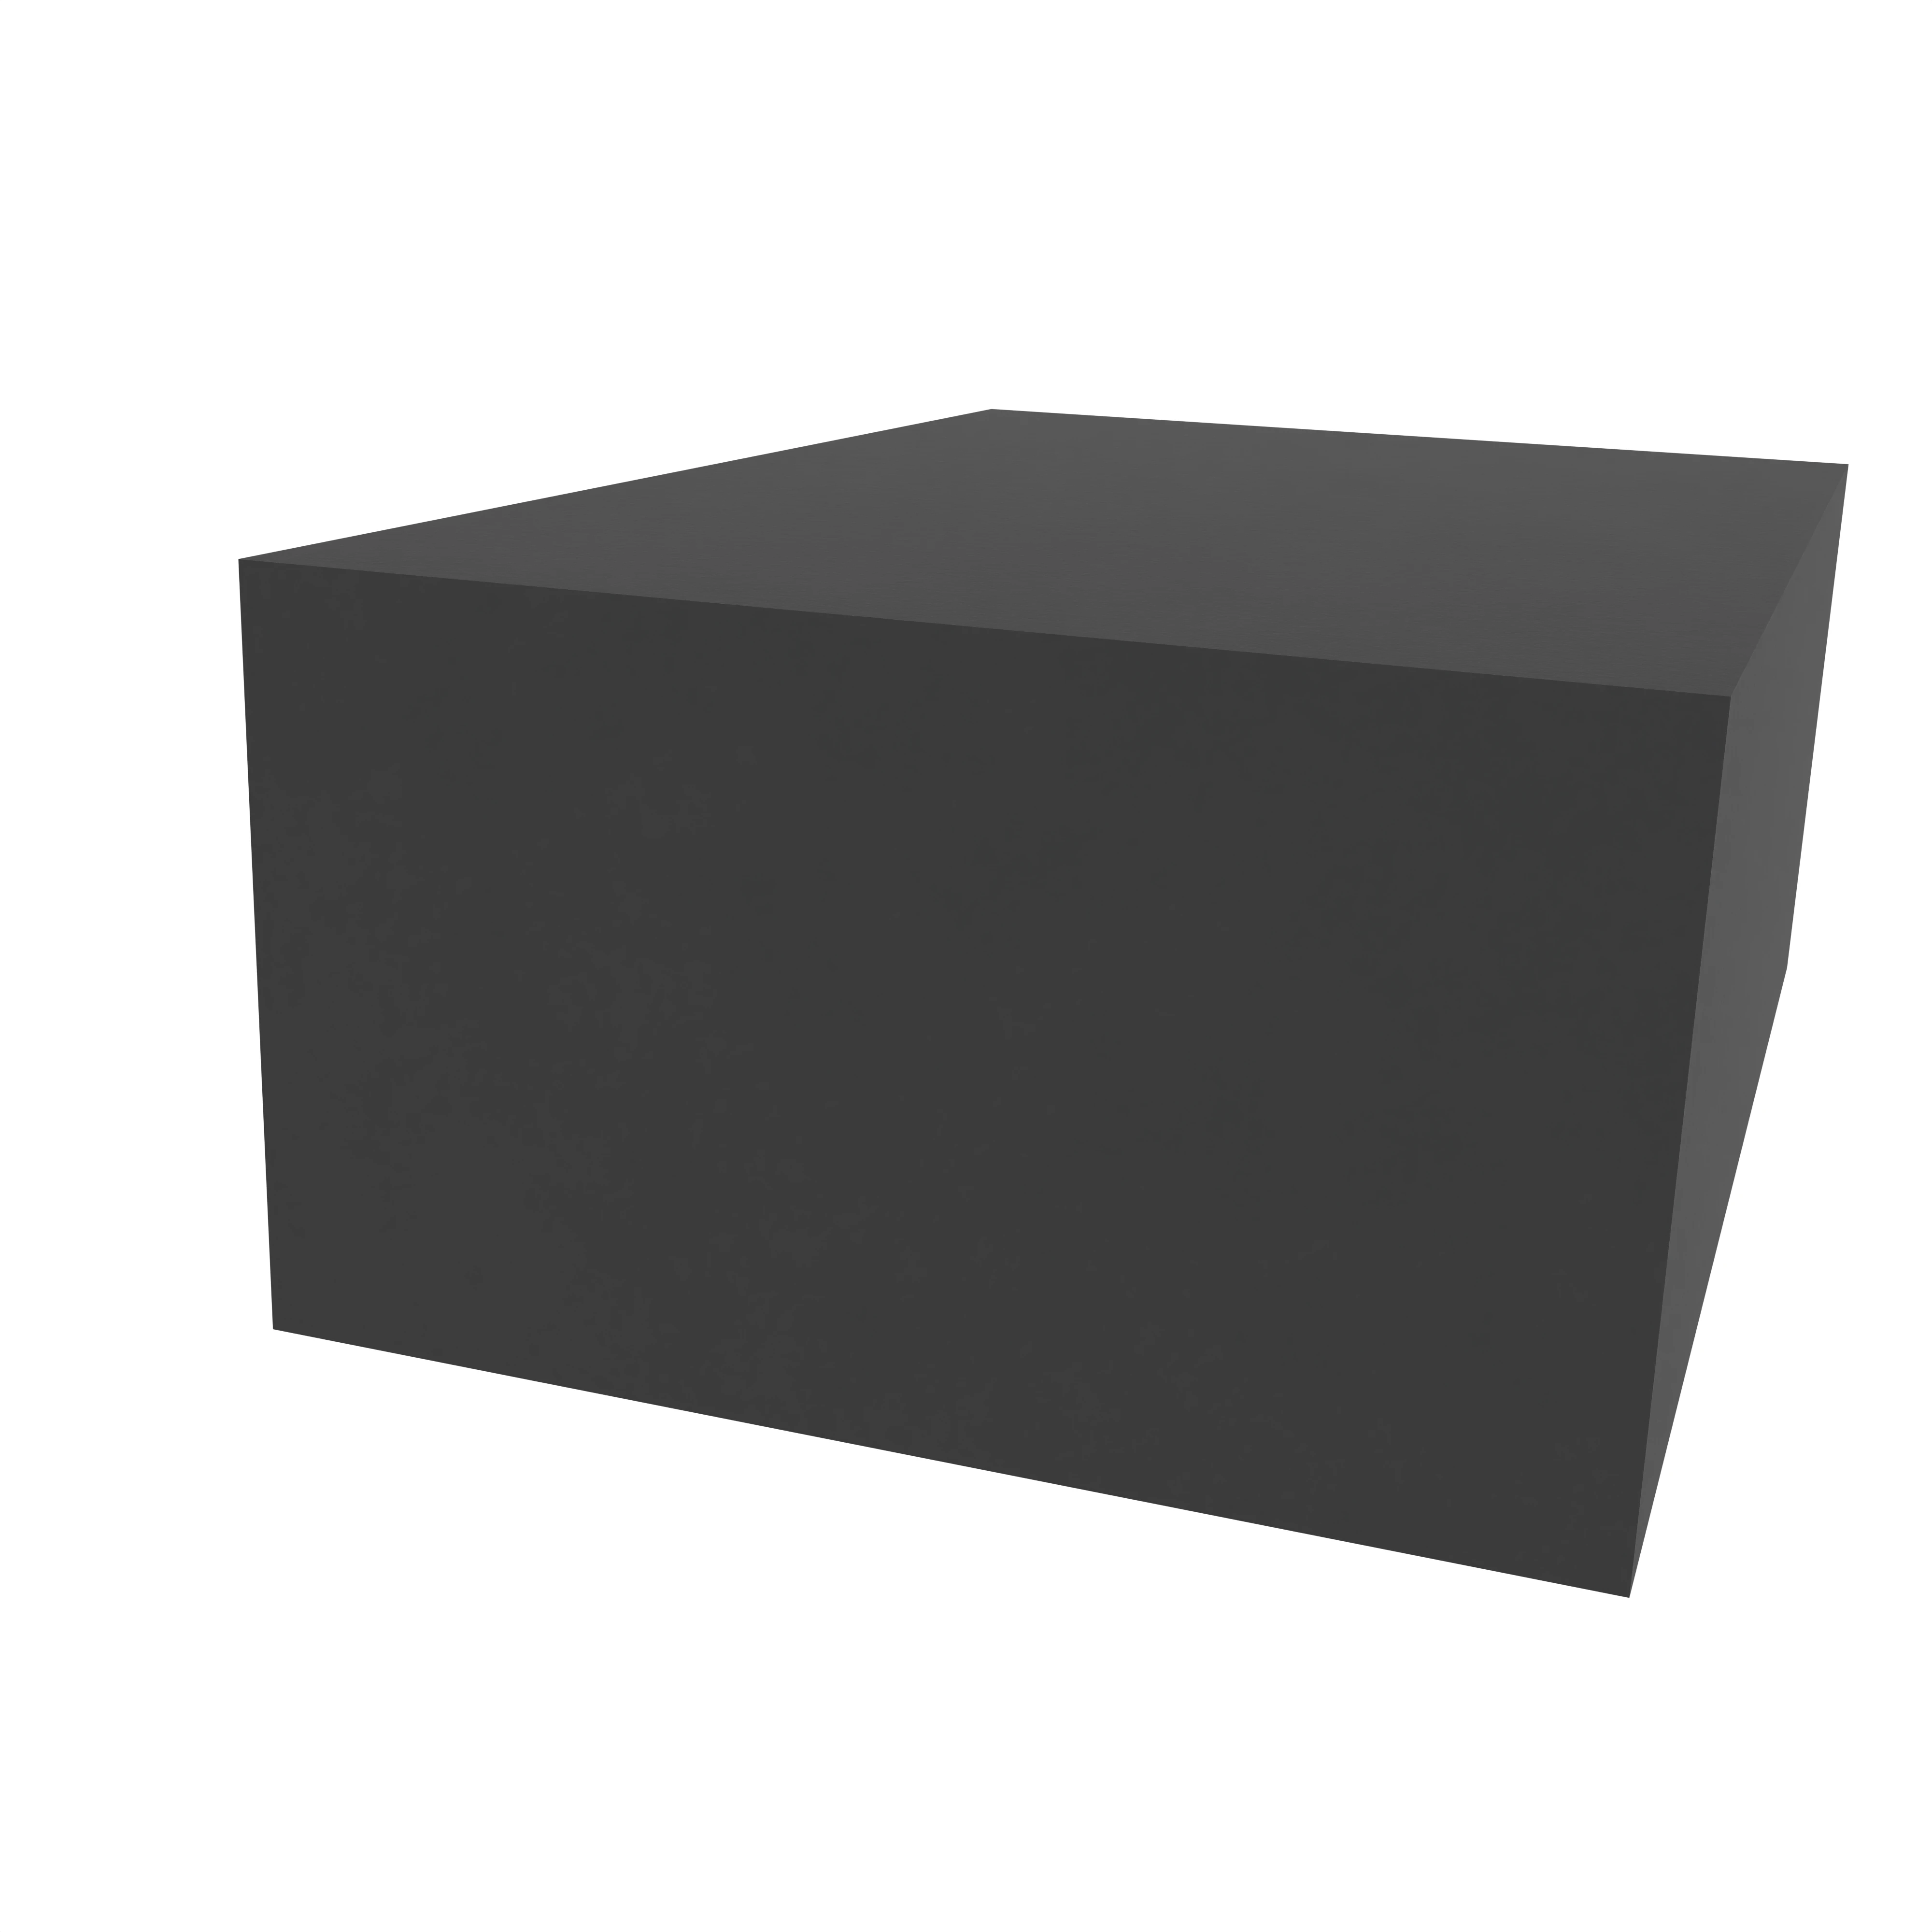 Moosgummidichtung vierkant | 35 mm Breite | Farbe: schwarz